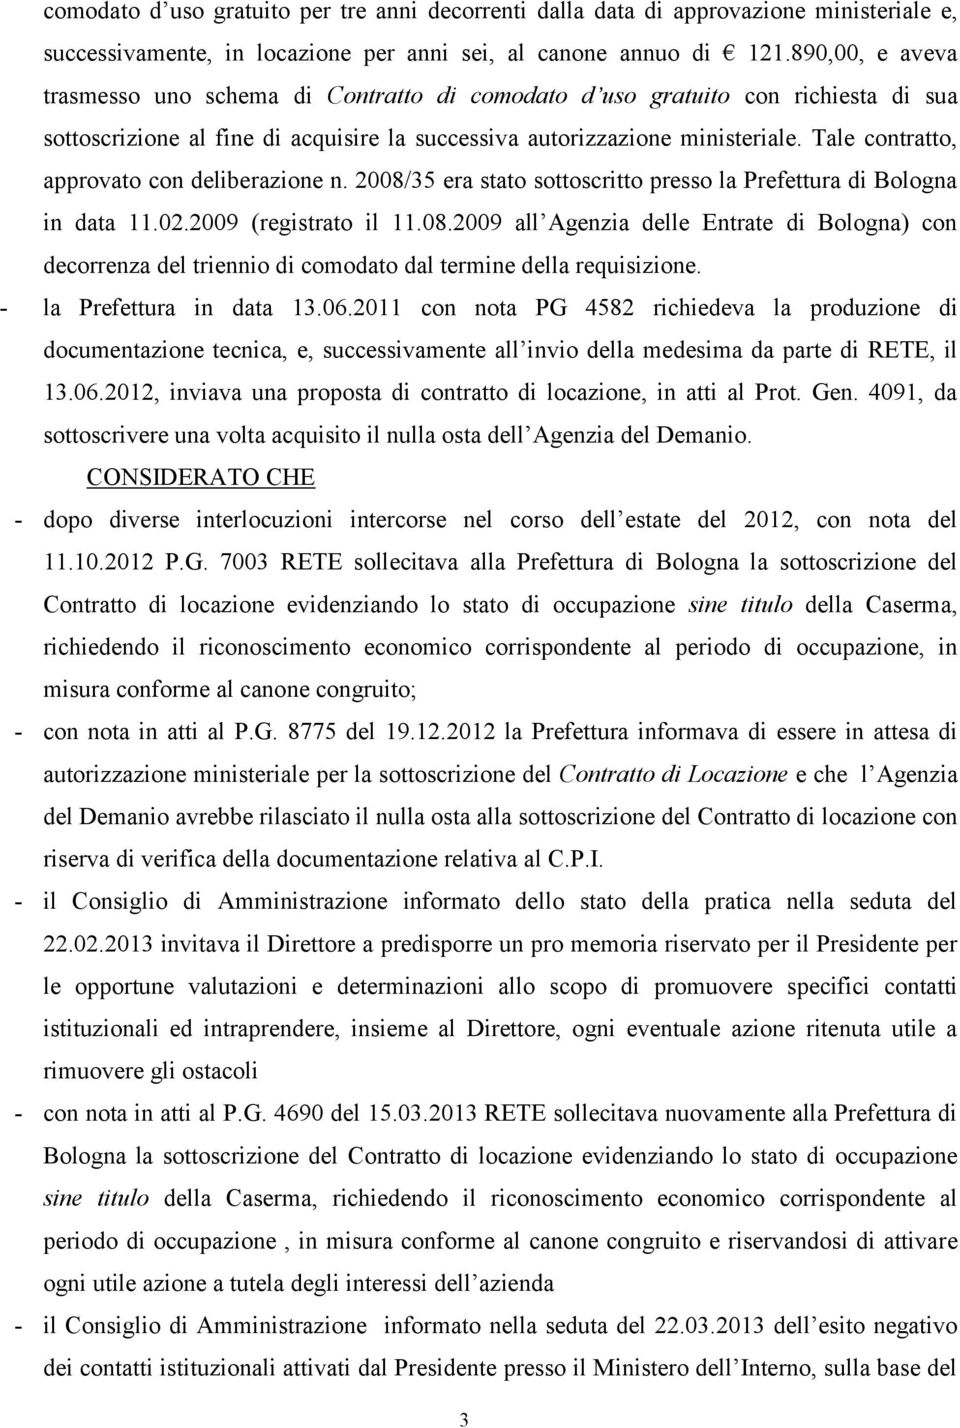 Tale contratto, approvato con deliberazione n. 2008/35 era stato sottoscritto presso la Prefettura di Bologna in data 11.02.2009 (registrato il 11.08.2009 all Agenzia delle Entrate di Bologna) con decorrenza del triennio di comodato dal termine della requisizione.